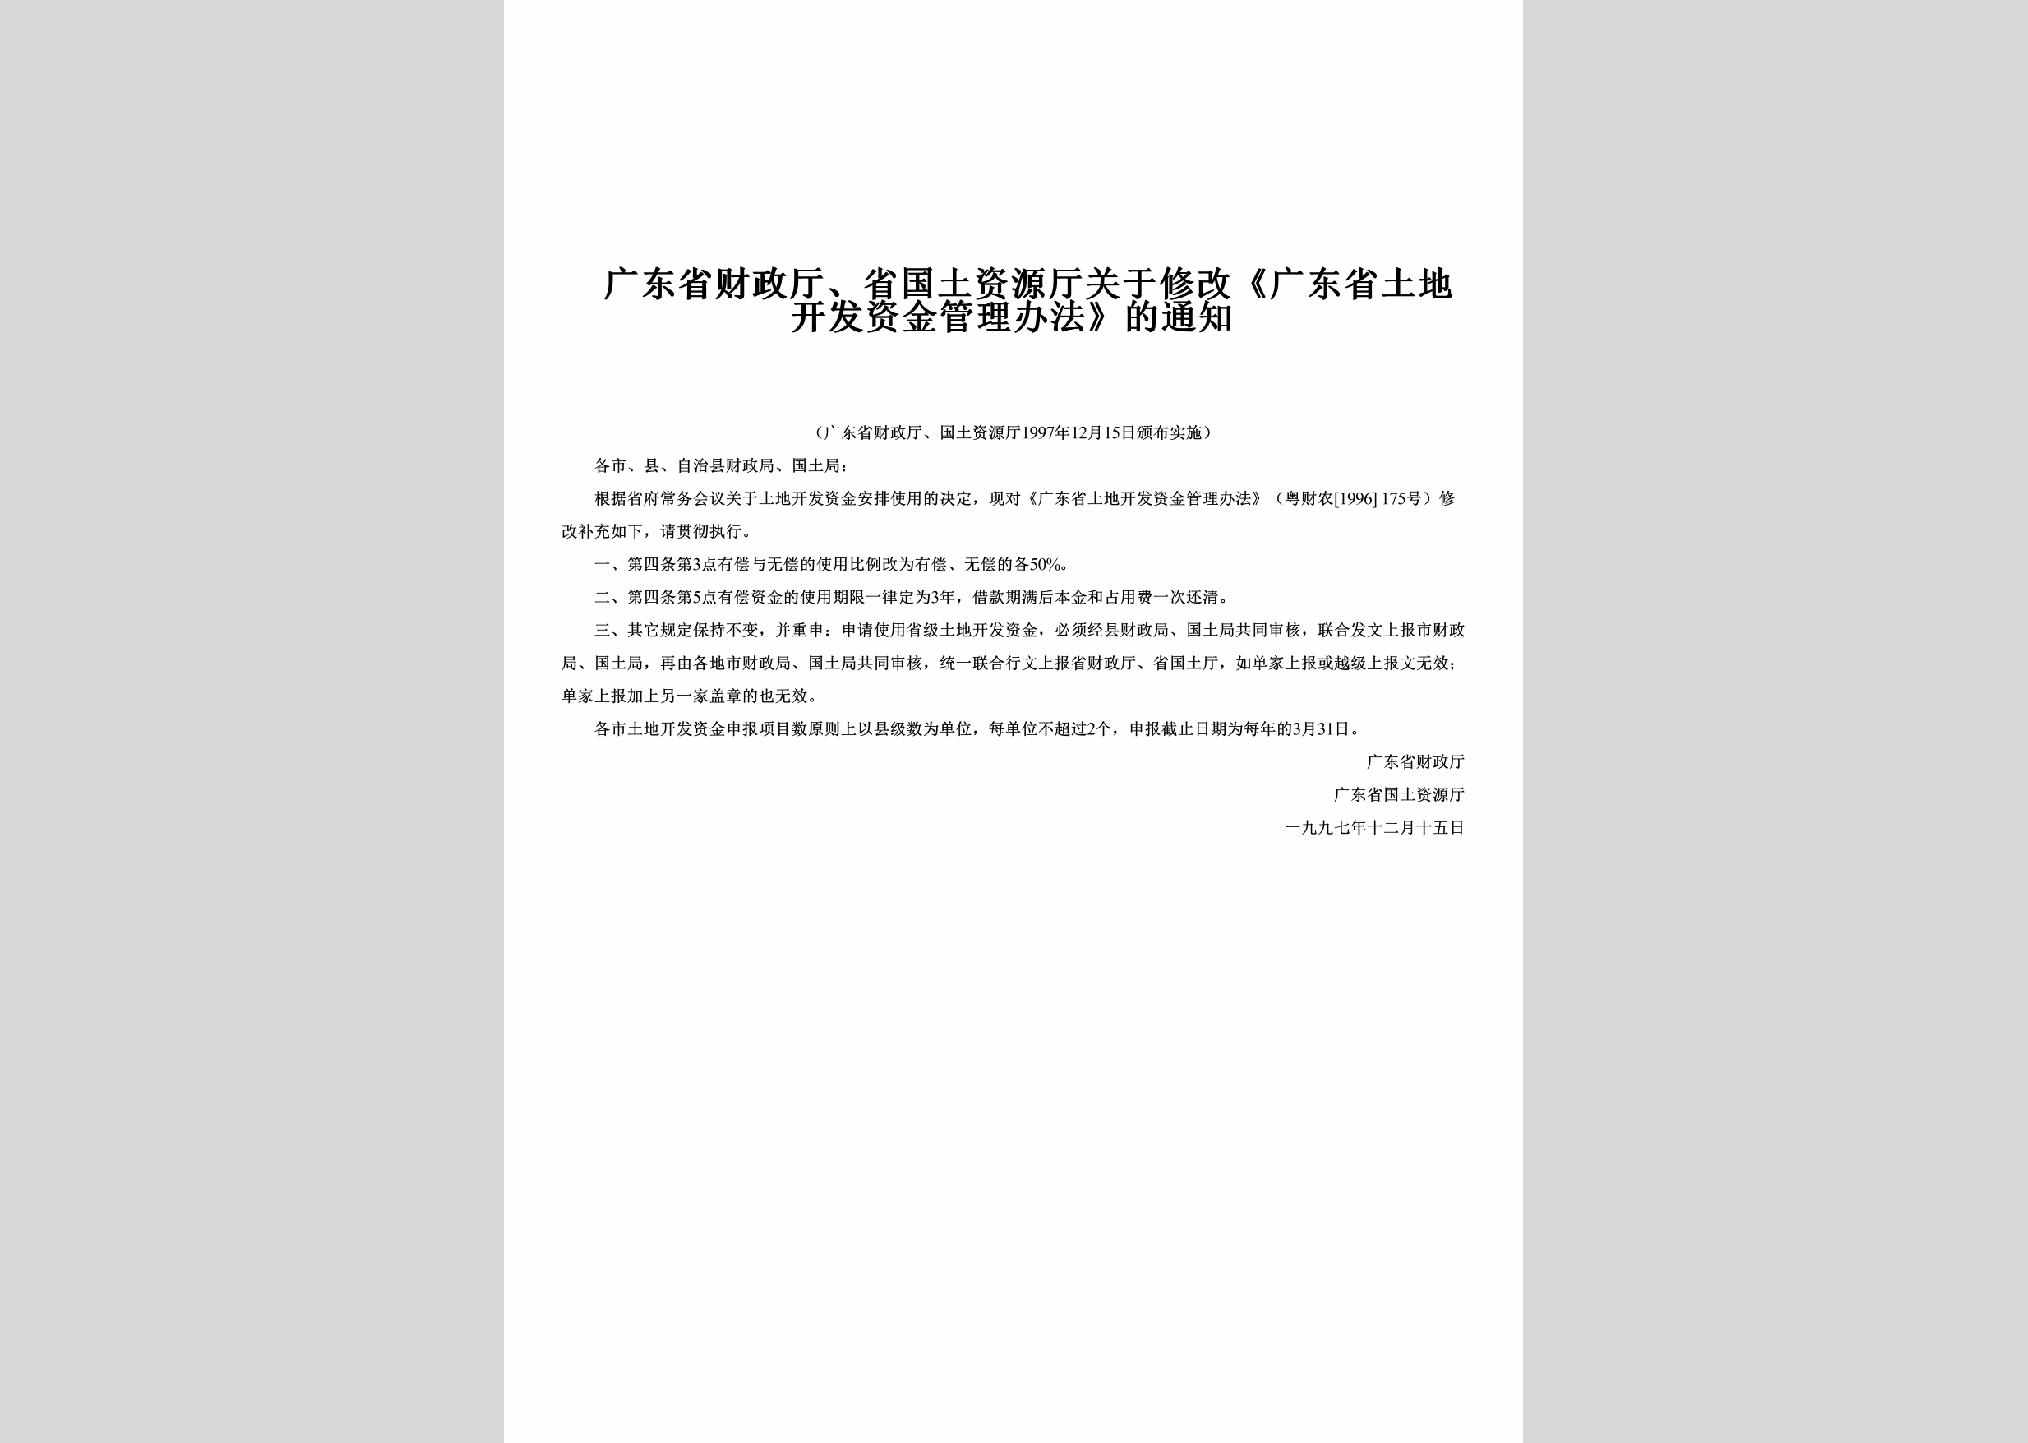 GD-CZTSGTZJ-1997：关于修改《广东省土地开发资金管理办法》的通知